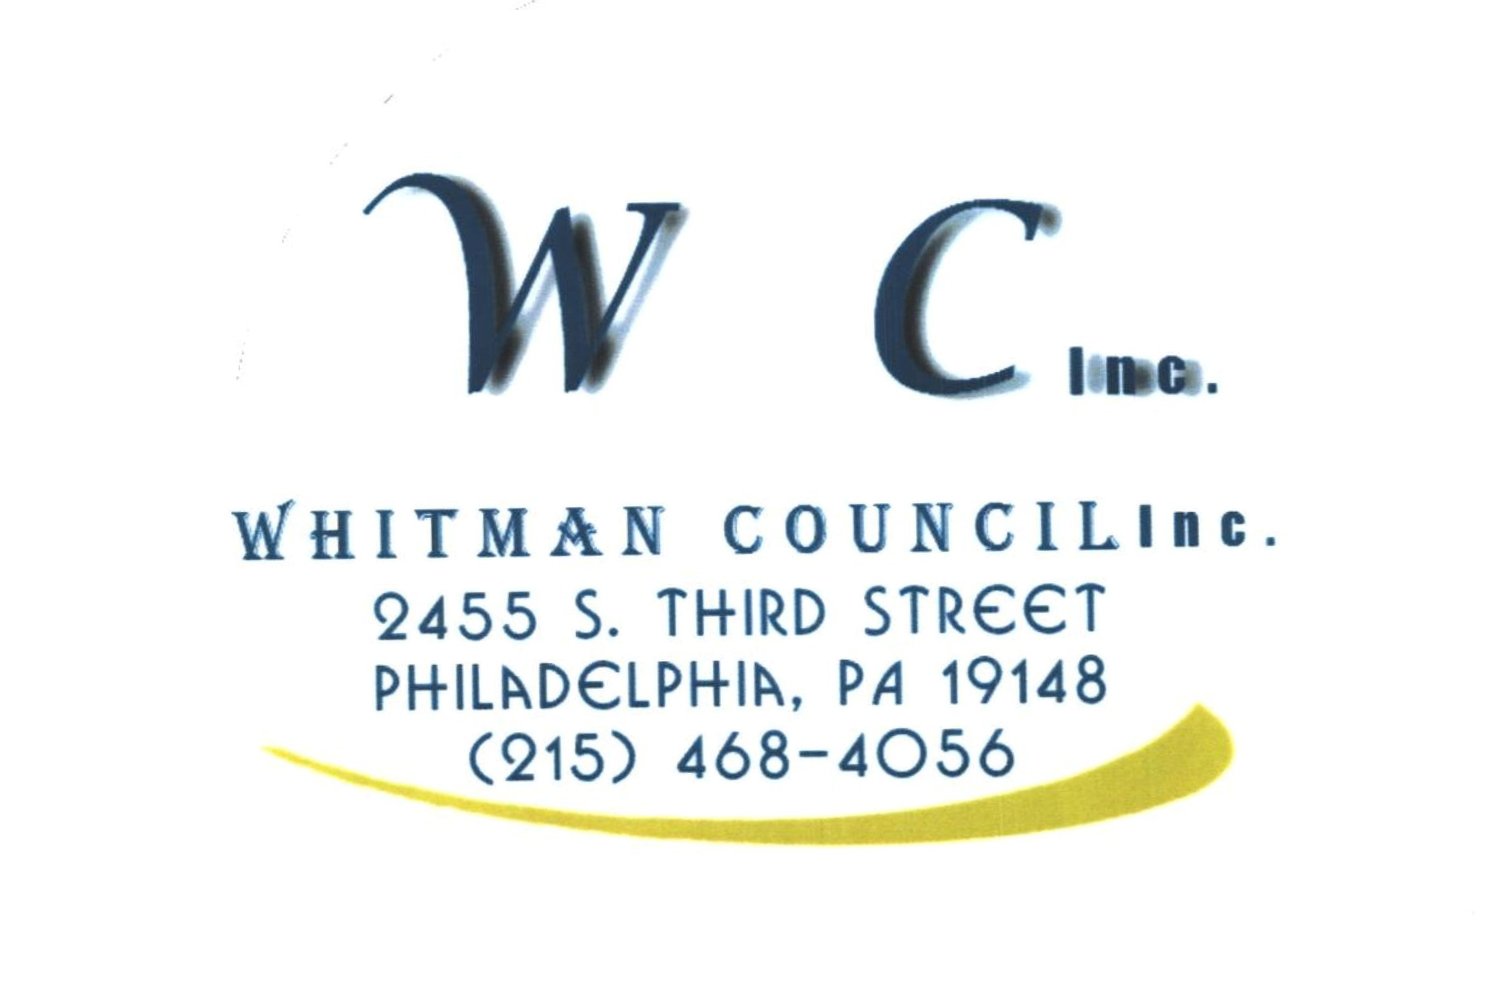 Whitman Council Inc